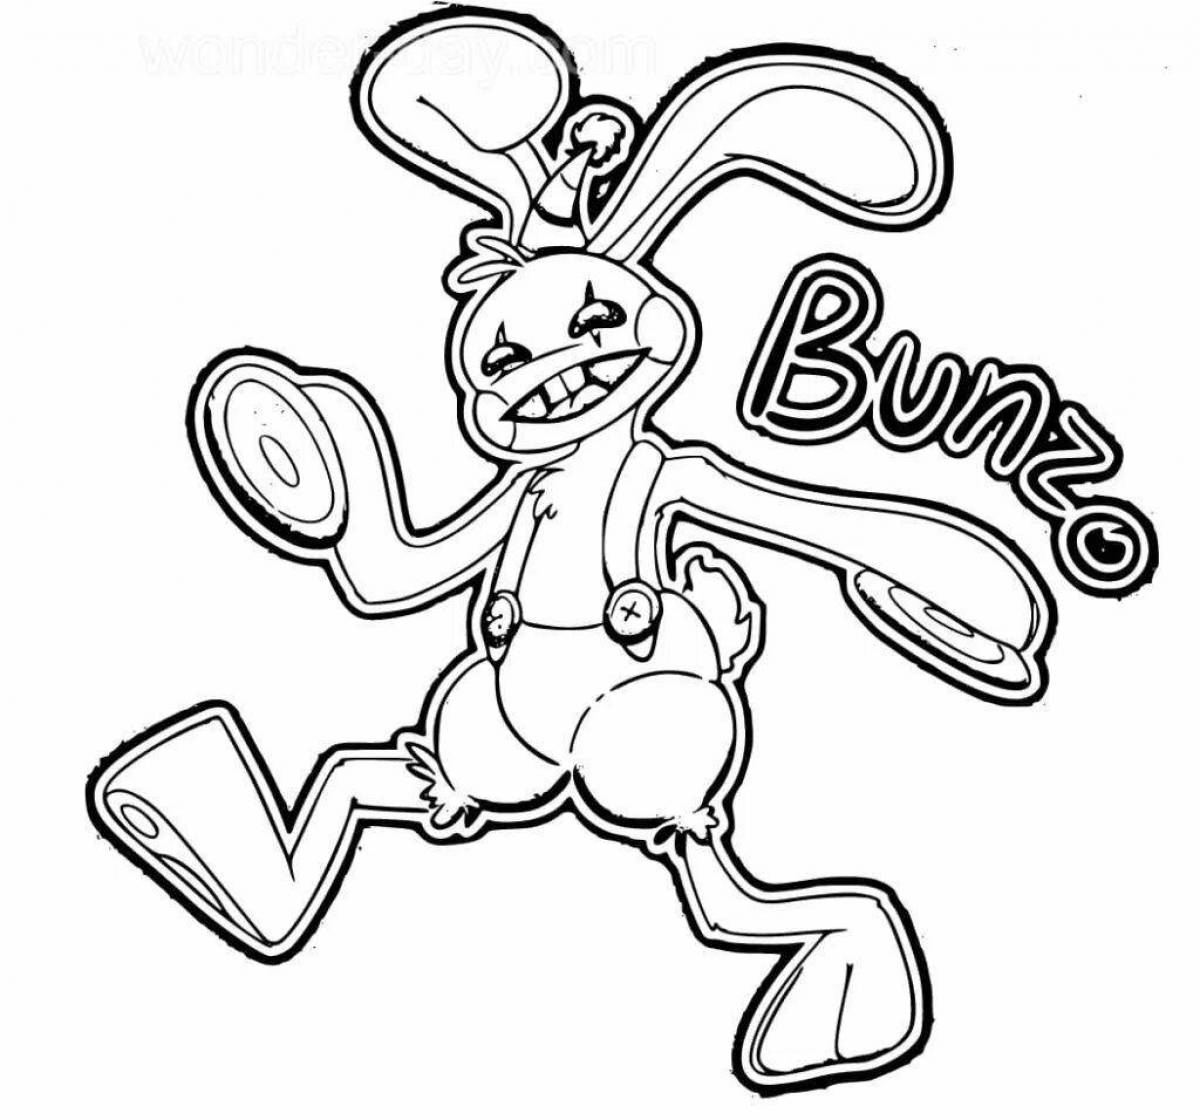 Bubbly bonzo bunny coloring page